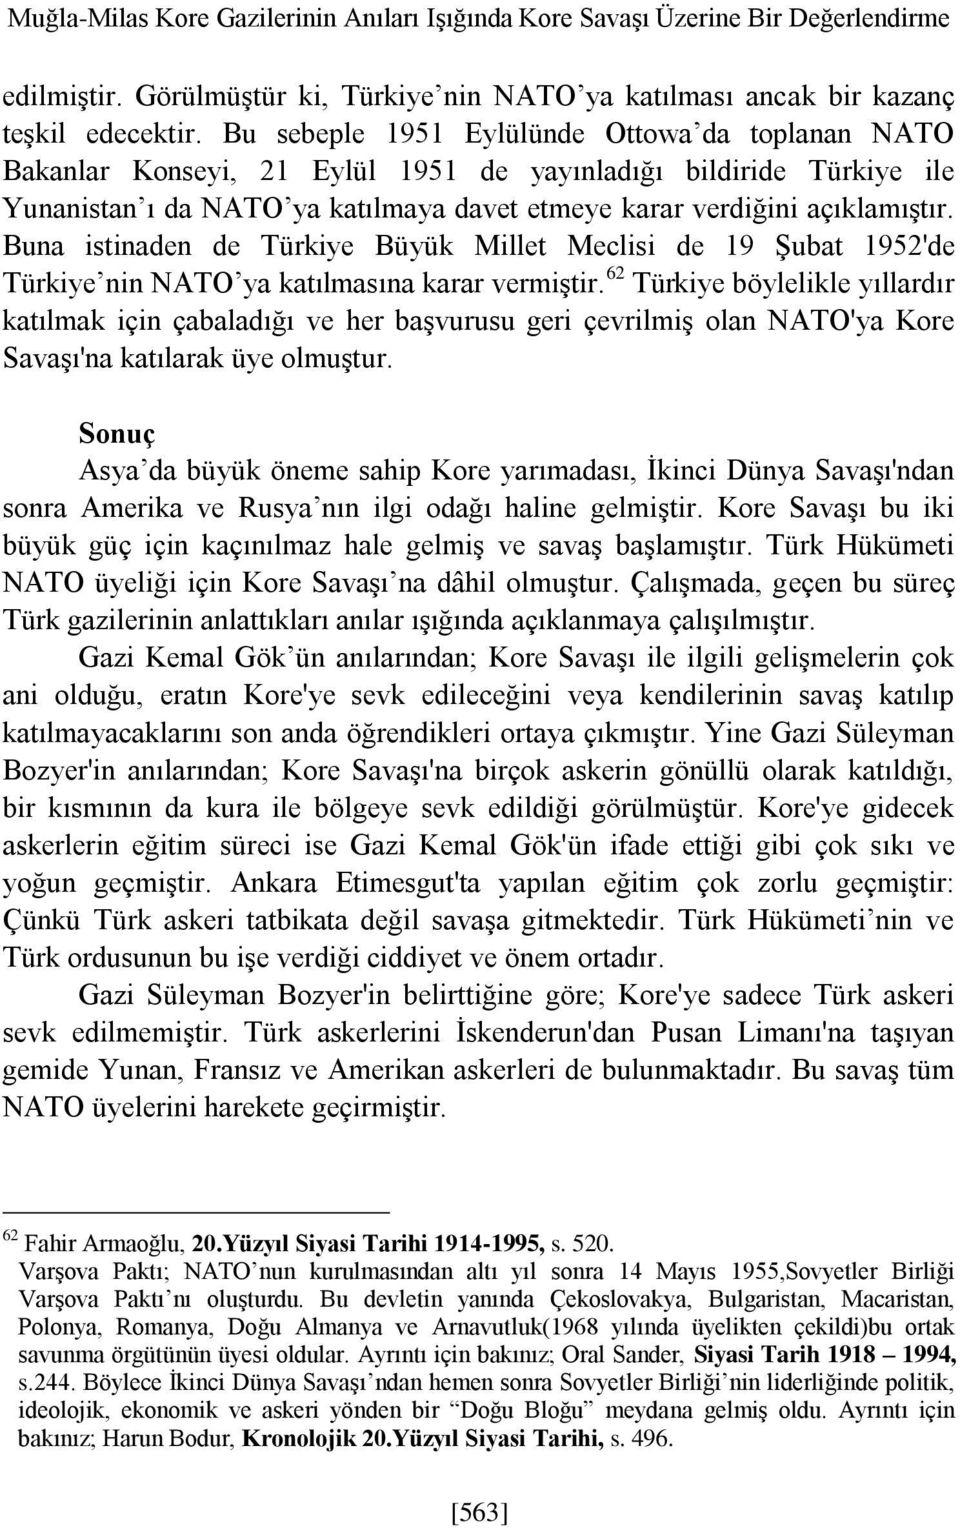 Buna istinaden de Türkiye Büyük Millet Meclisi de 19 Şubat 1952'de Türkiye nin NATO ya katılmasına karar vermiştir.